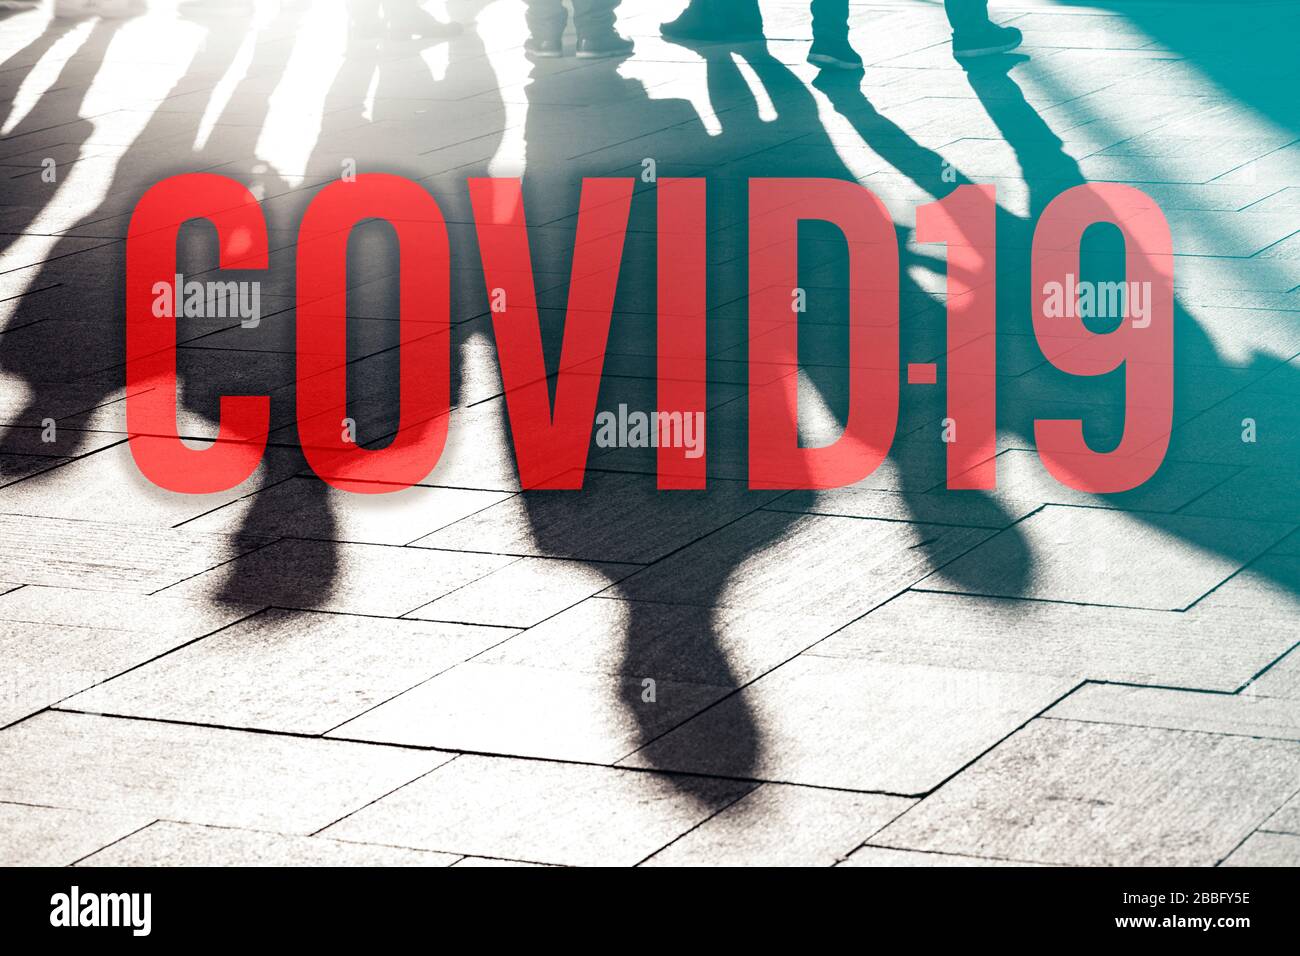 Coronavirus, COVID19, enfermedad coronaria, virus corona, concepto imagen sobre la epidemia en el mundo Foto de stock